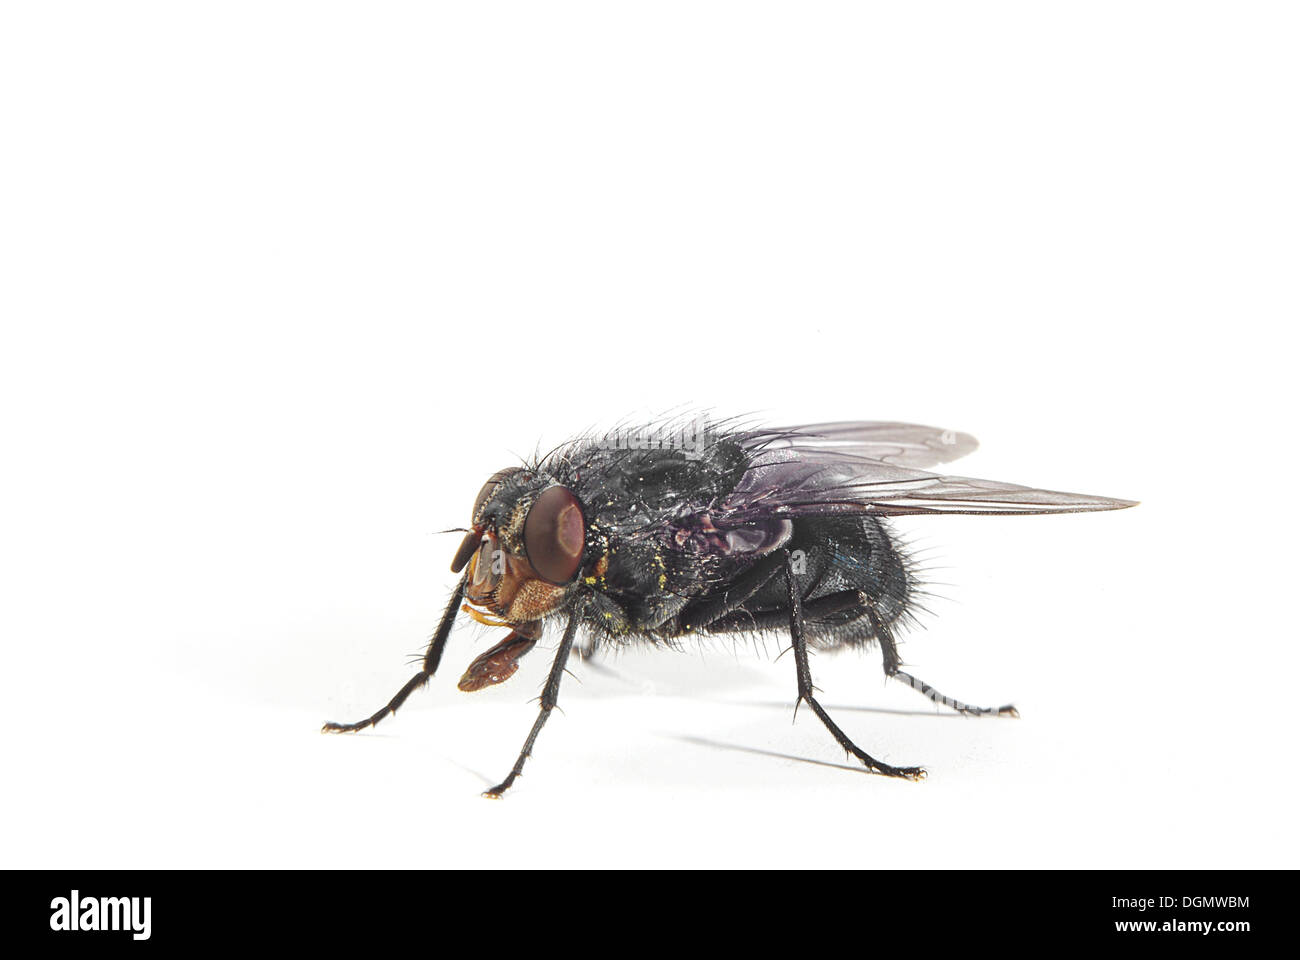 bluebottle fly on white background Stock Photo